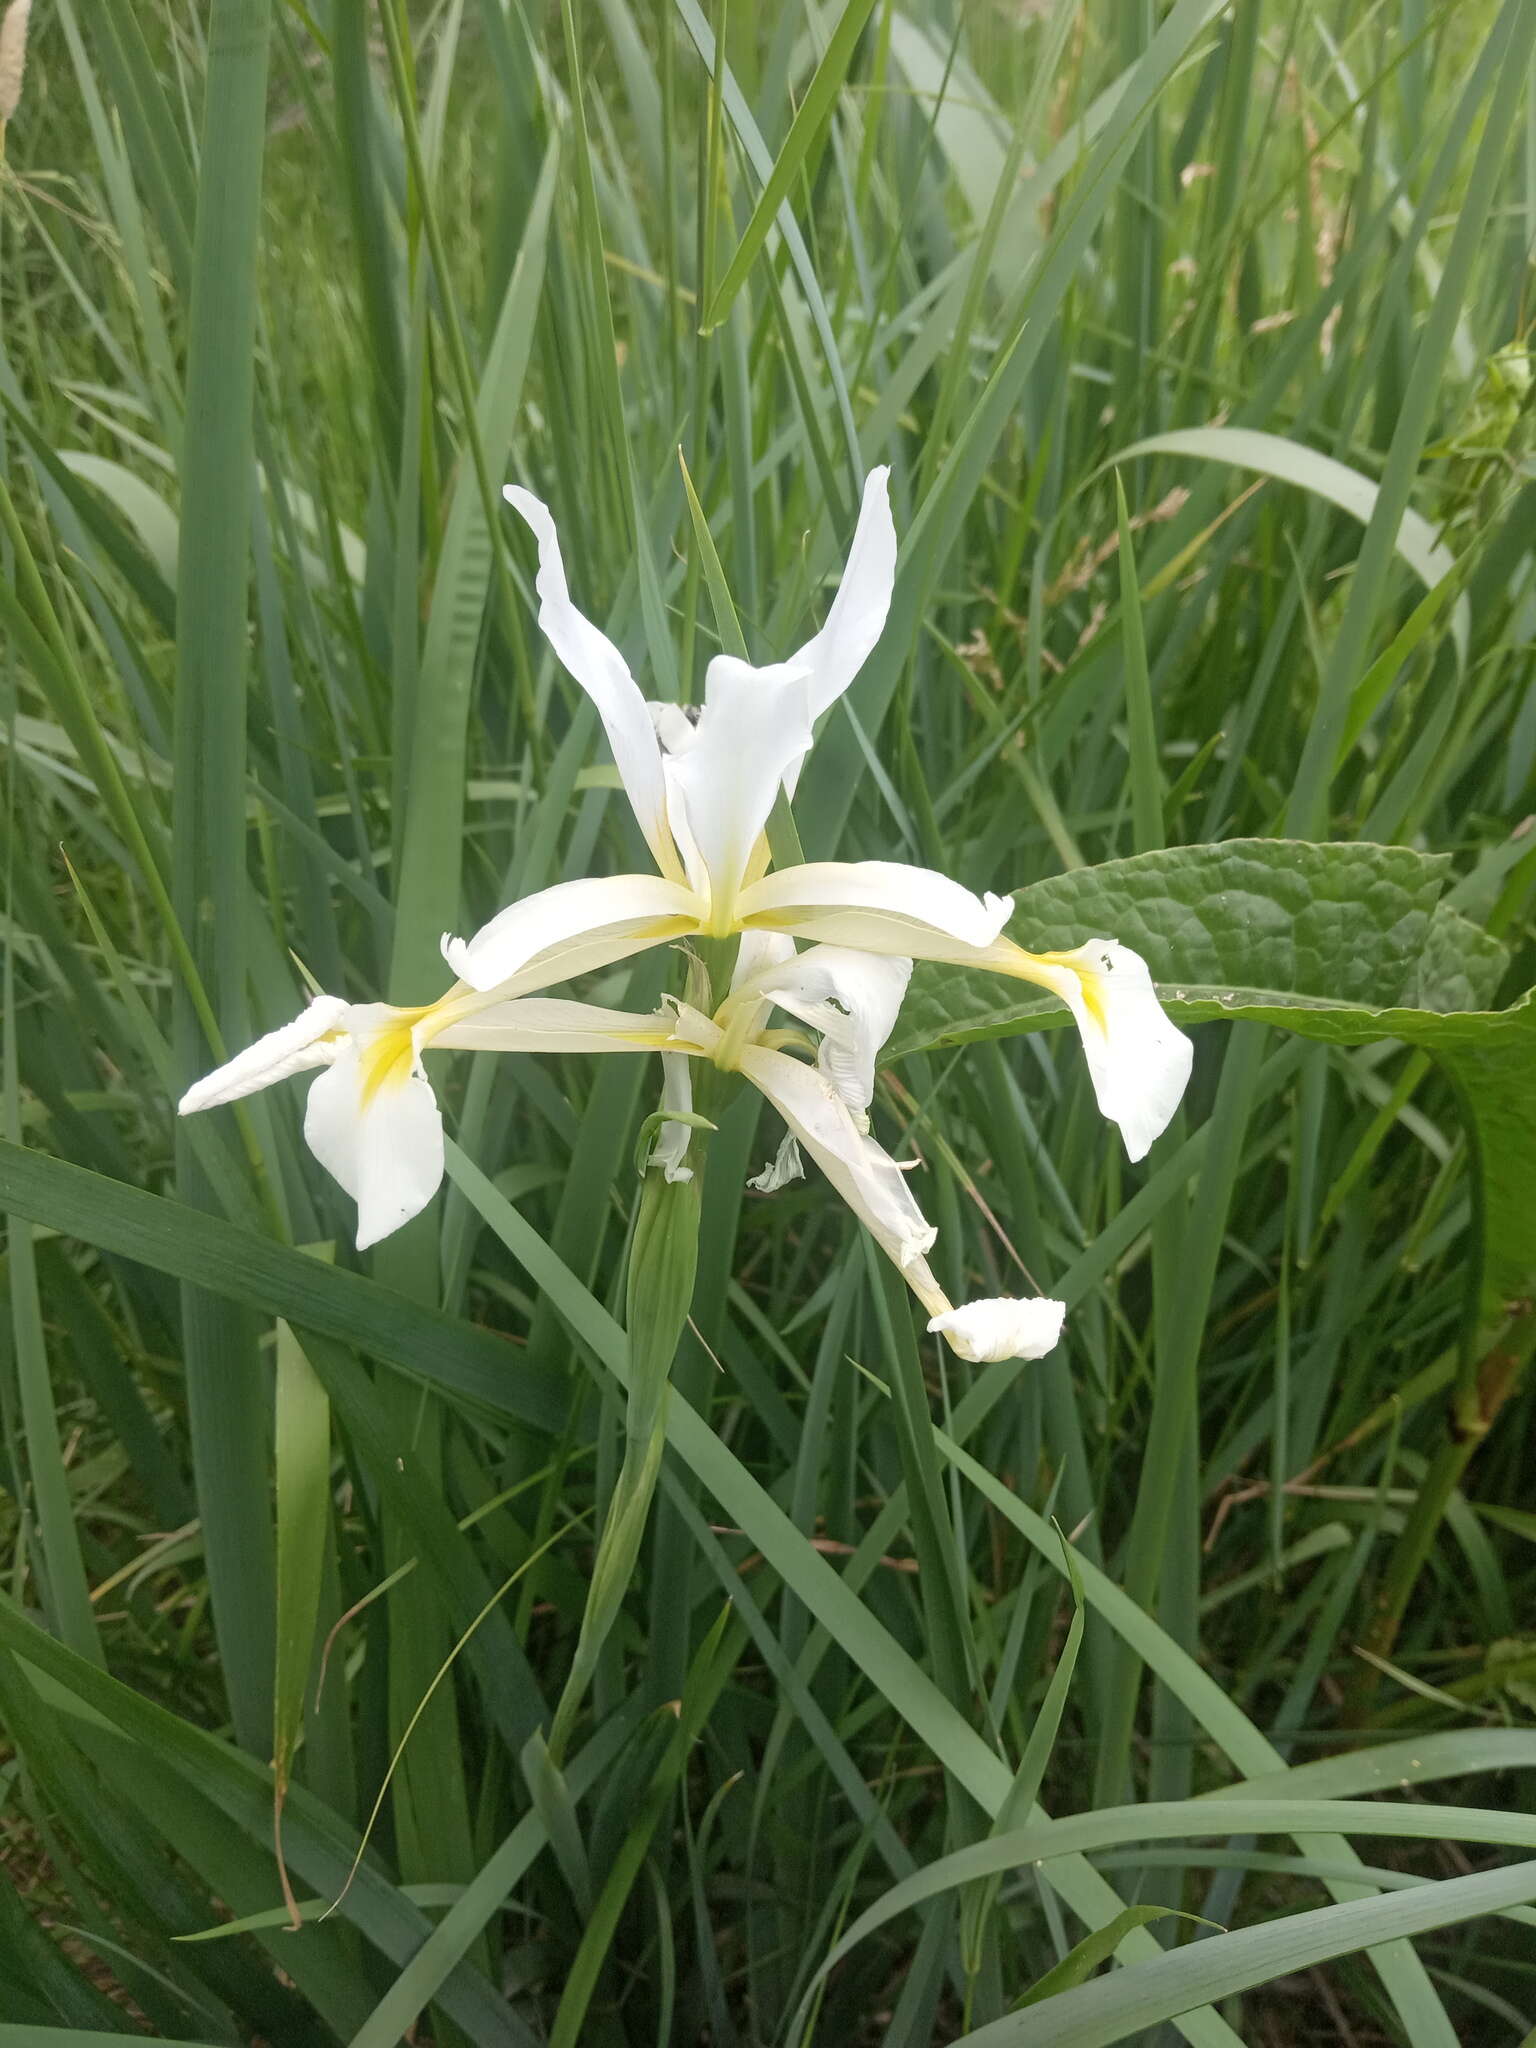 Image of Iris pseudonotha Galushko